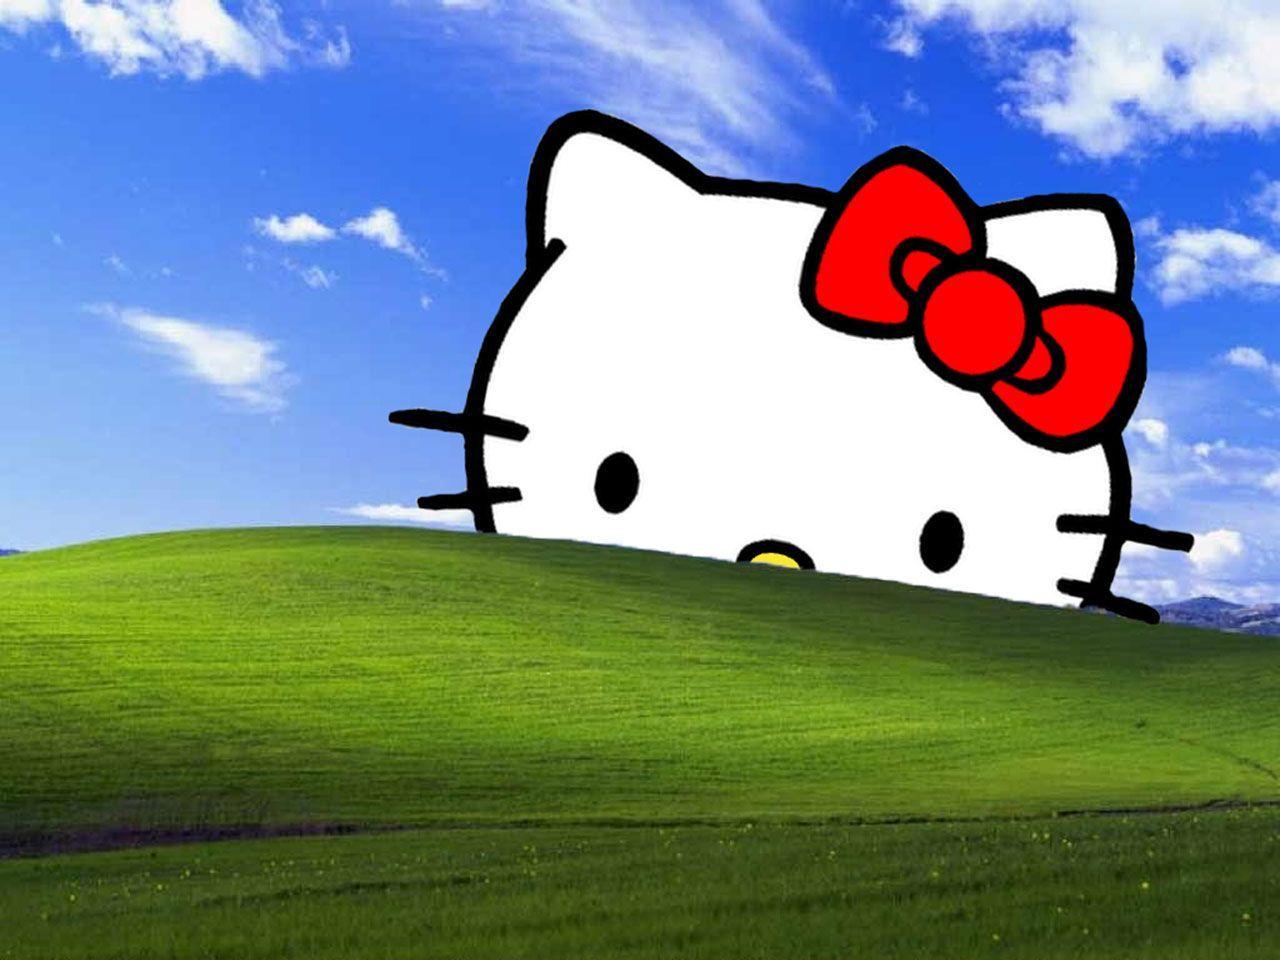 Bạn đang tìm kiếm một hình nền độc đáo cho máy tính của mình? Hãy thử ngay Hello Kitty Laptop Background này! Với gam màu tươi sáng và hình ảnh ngộ nghĩnh của Hello Kitty, điều này sẽ khiến cho máy tính của bạn trở nên đáng yêu hơn. 